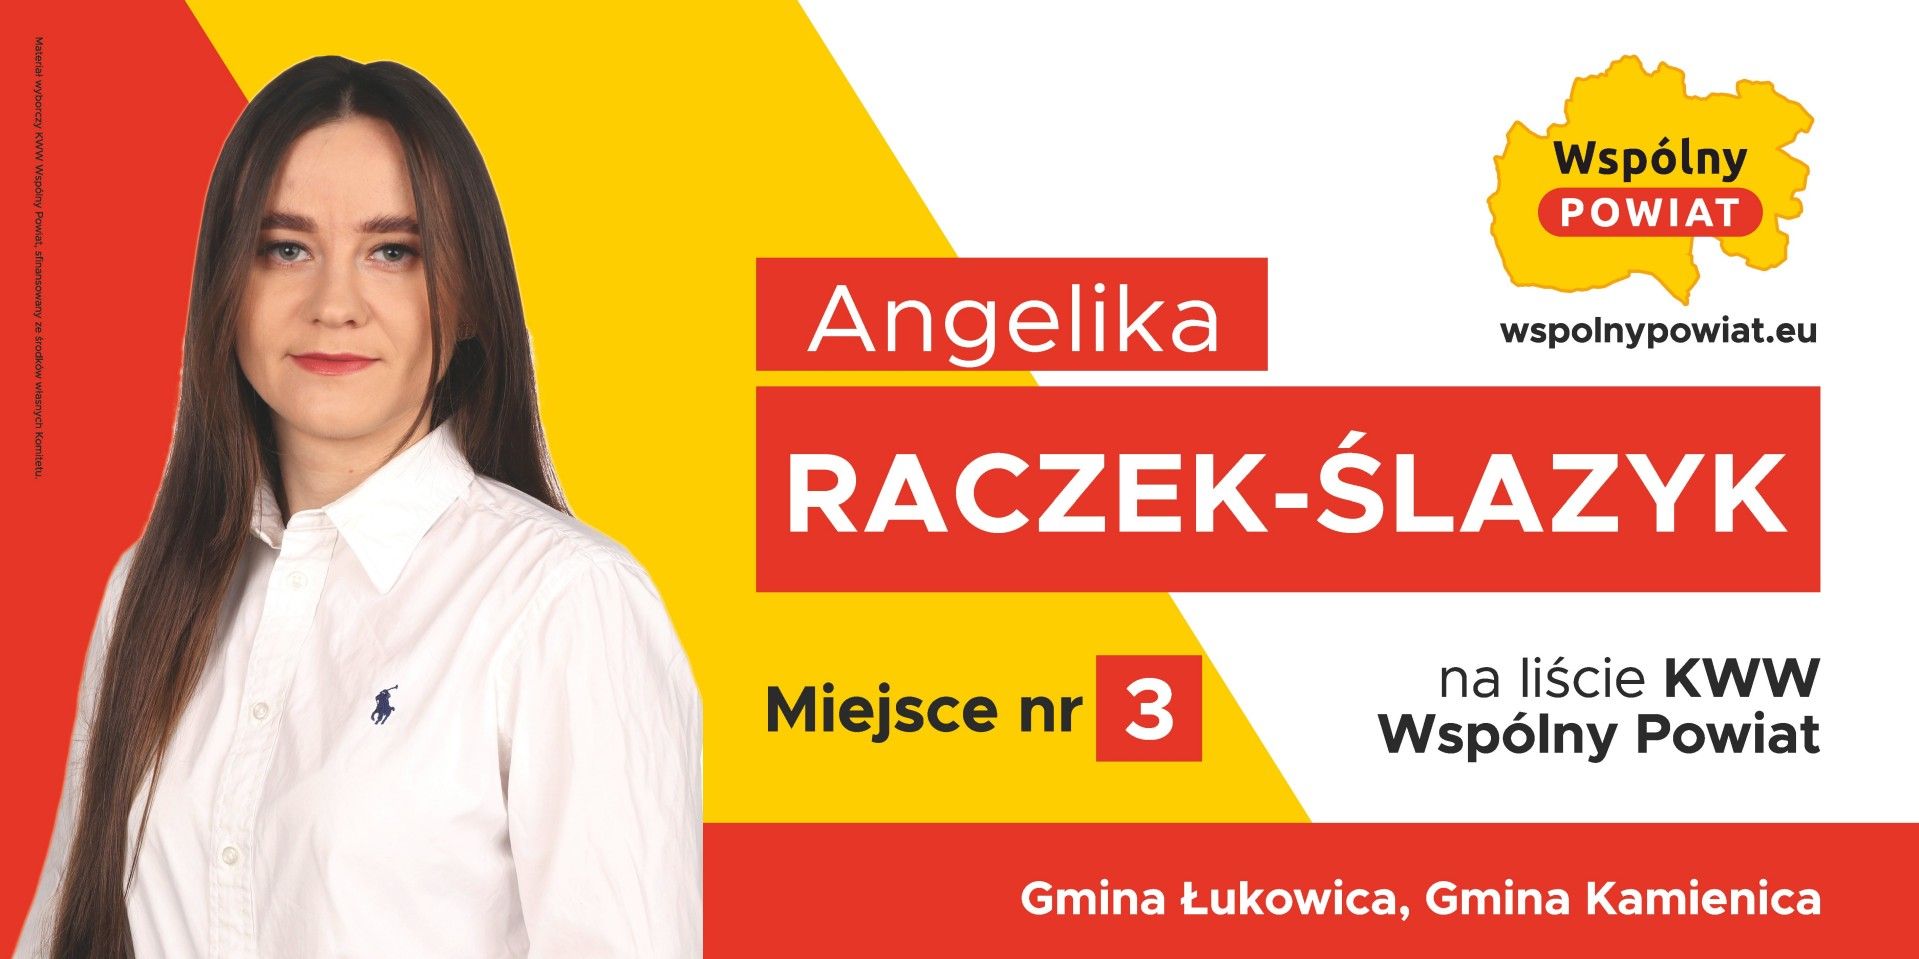 Angelika Raczek-Ślazyk 